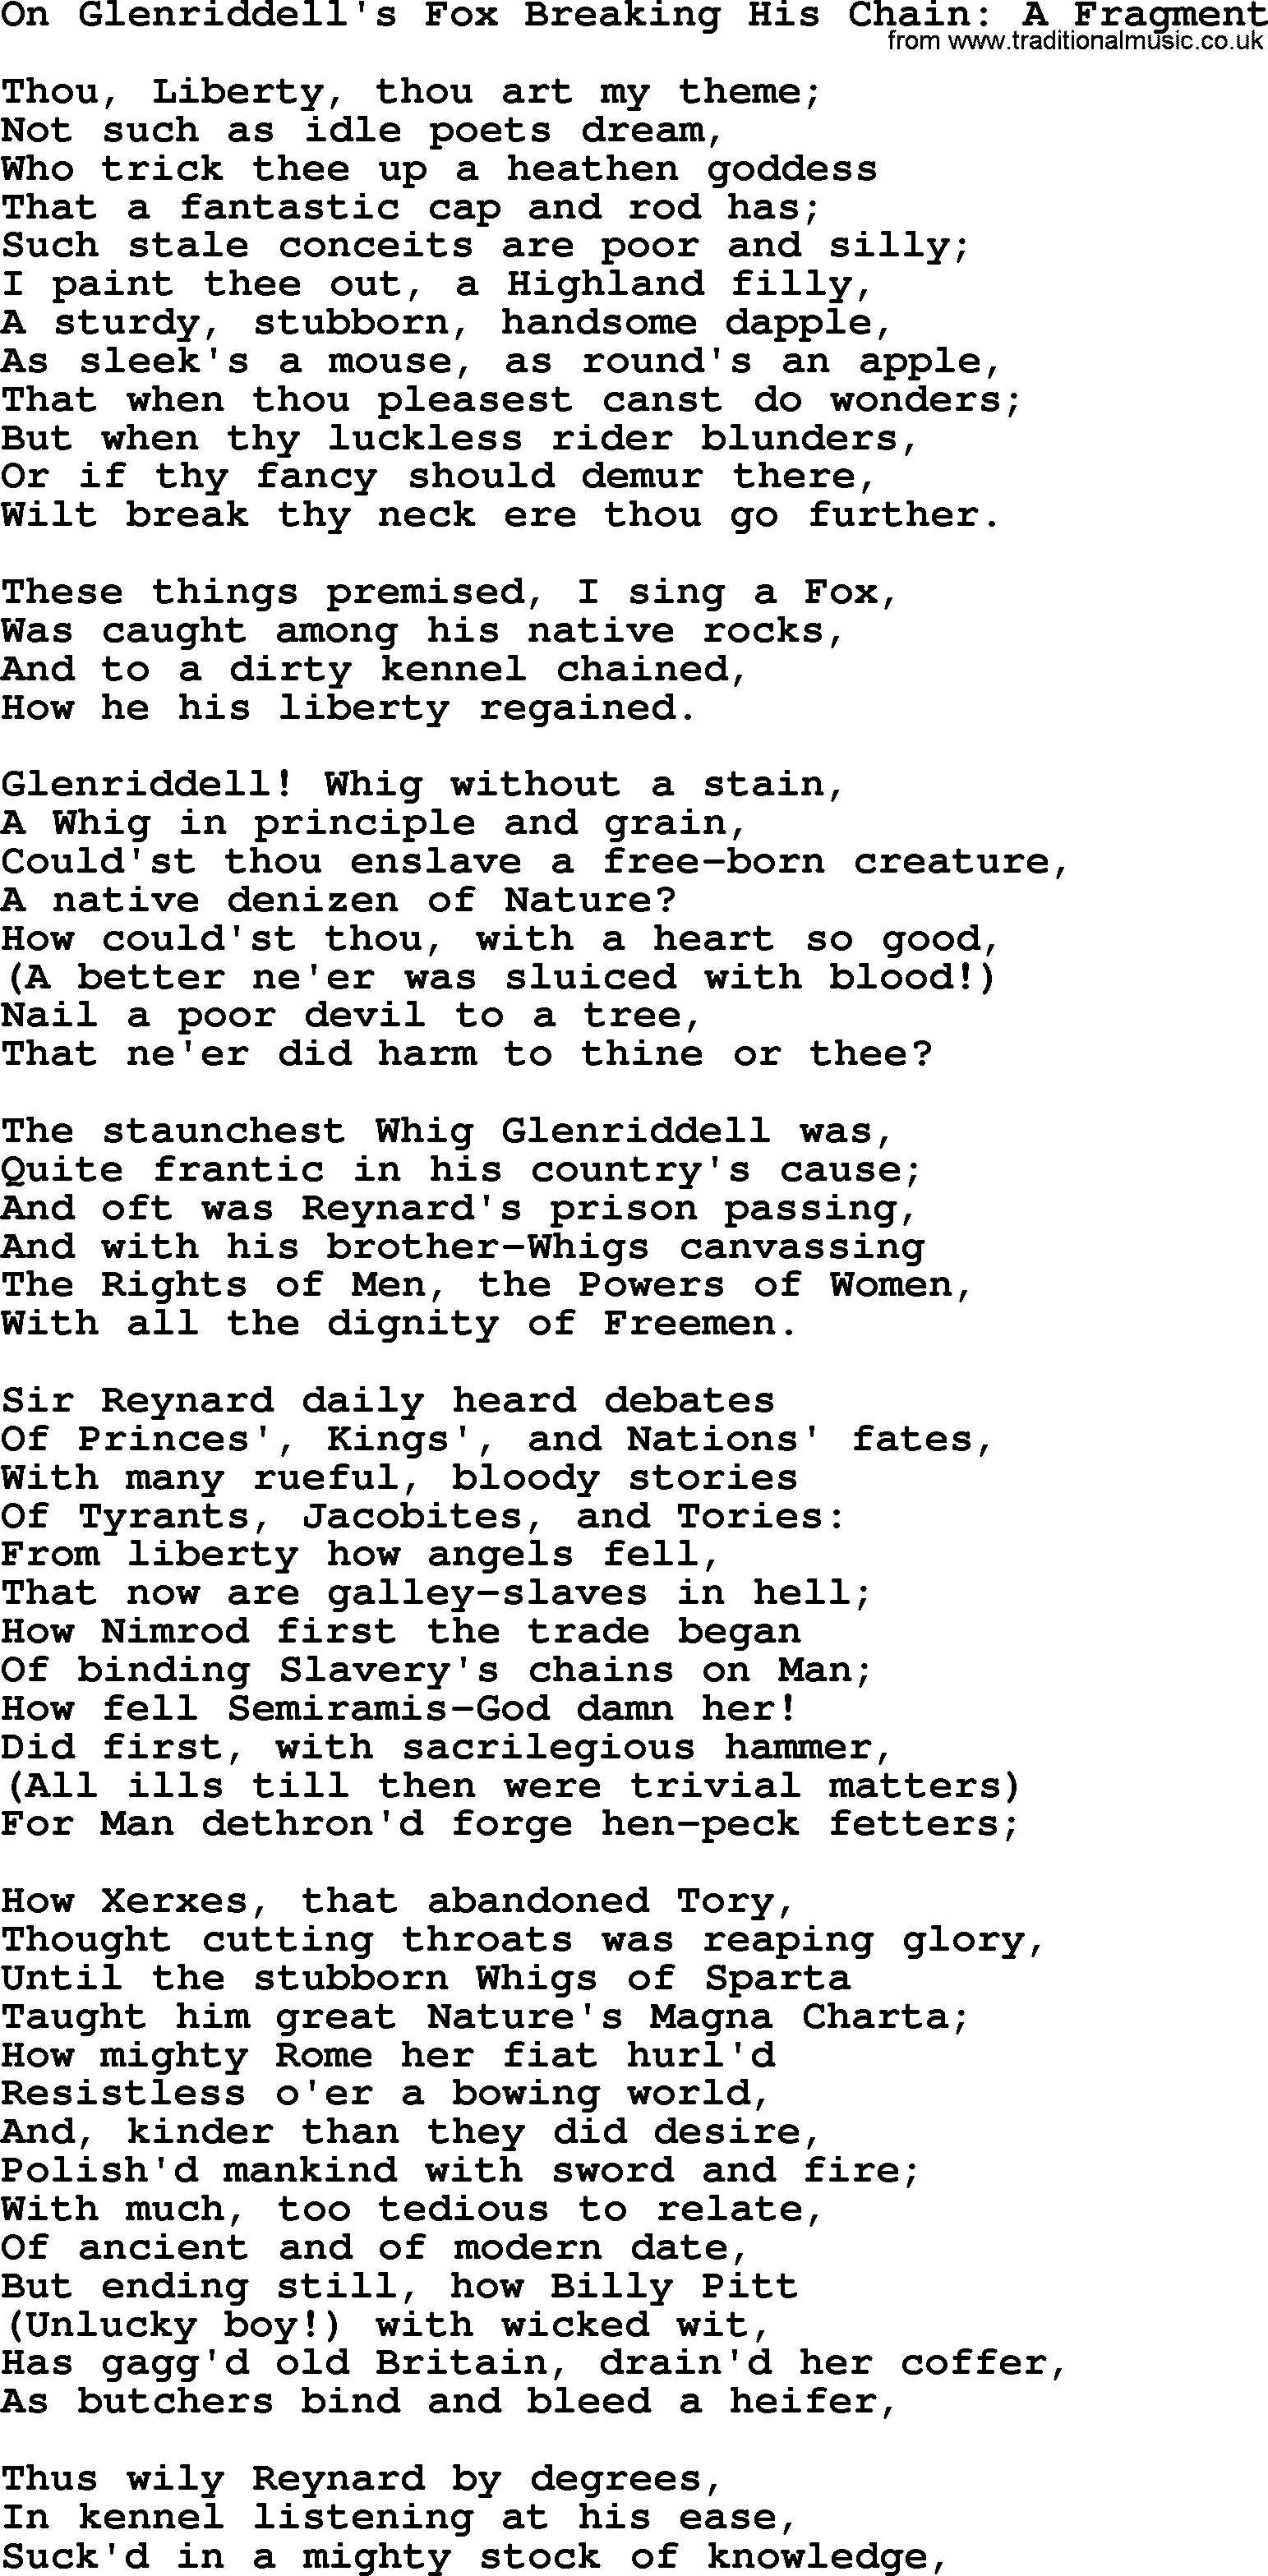 Robert Burns Songs & Lyrics: On Glenriddell's Fox Breaking His Chain A Fragment